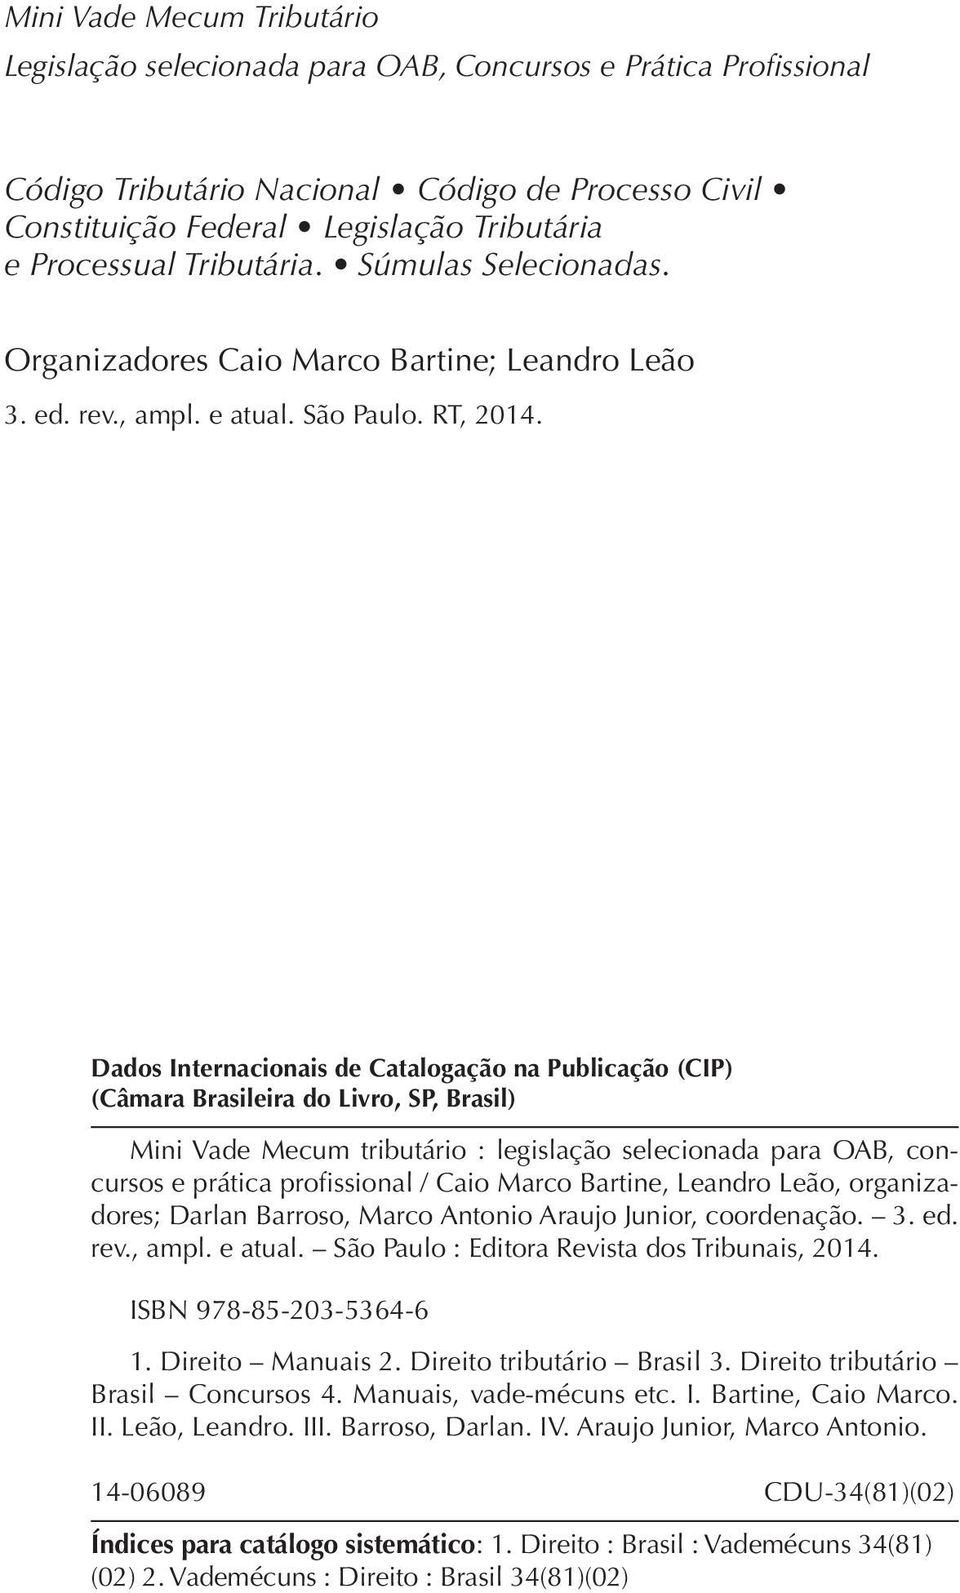 Dados Internacionais de Catalogação na Publicação (CIP) (Câmara Brasileira do Livro, SP, Brasil) Mini Vade Mecum tributário : legislação selecionada para OAB, concursos e prática profissional / Caio